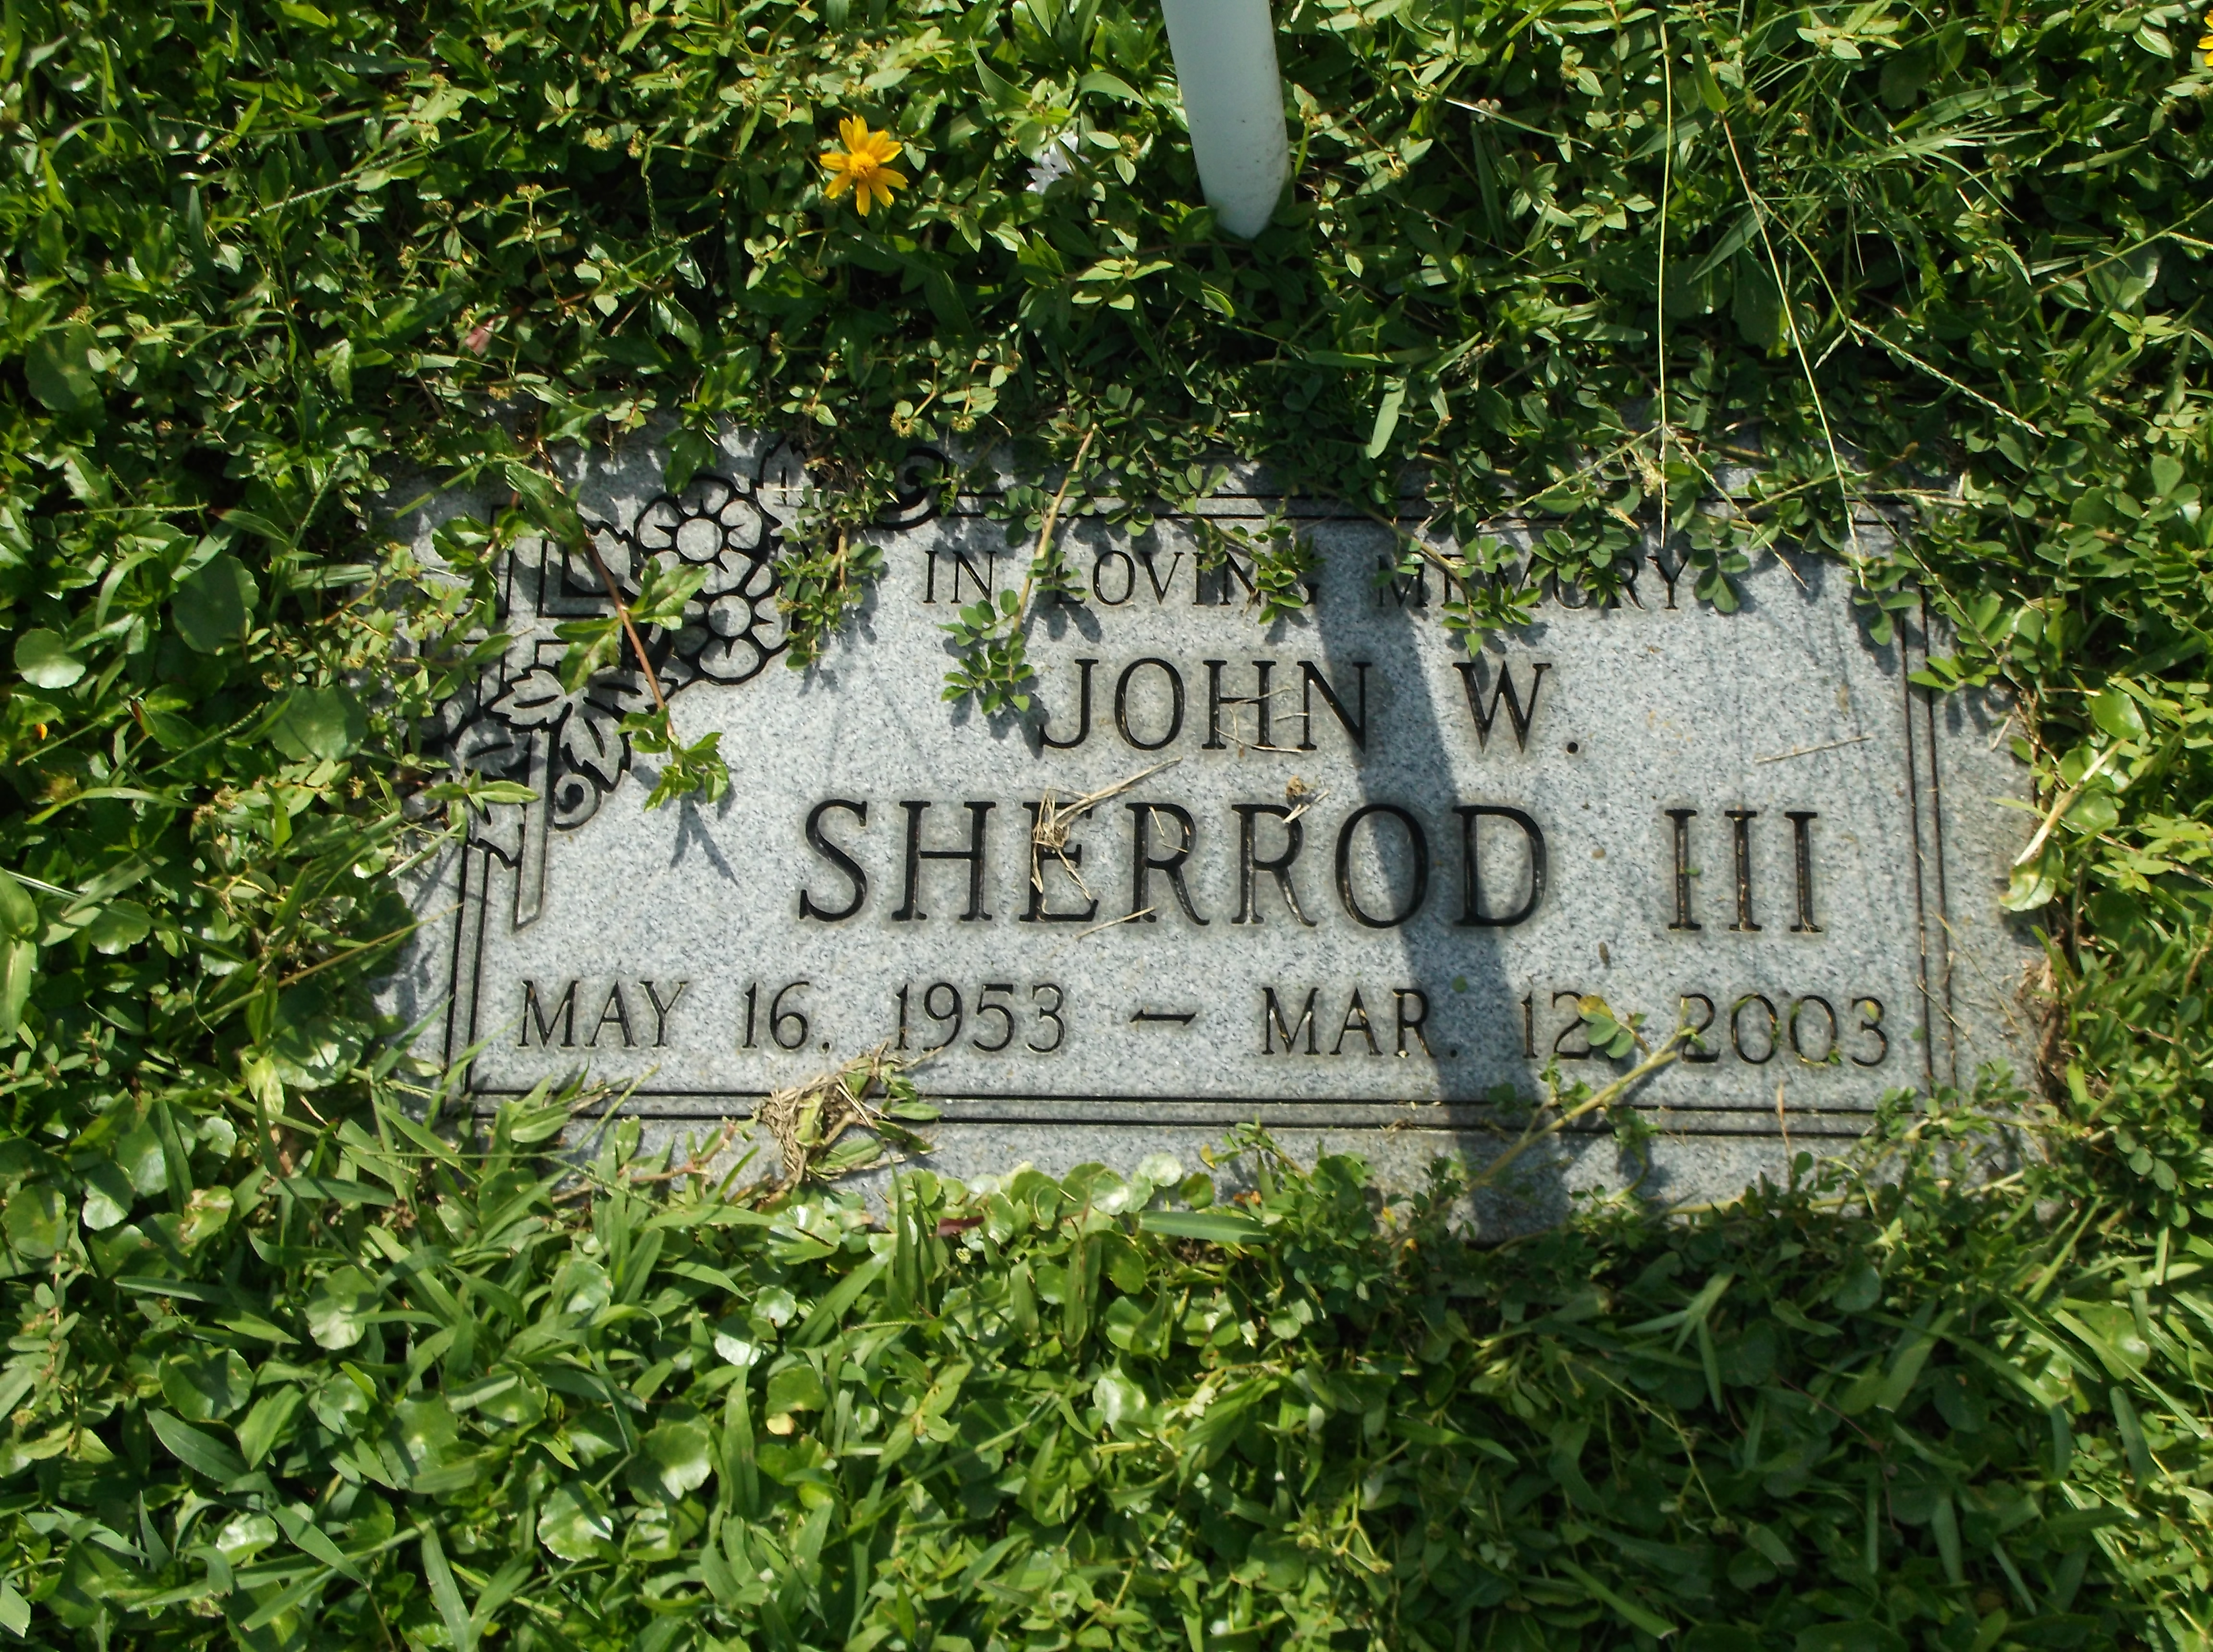 John W Sherrod, III